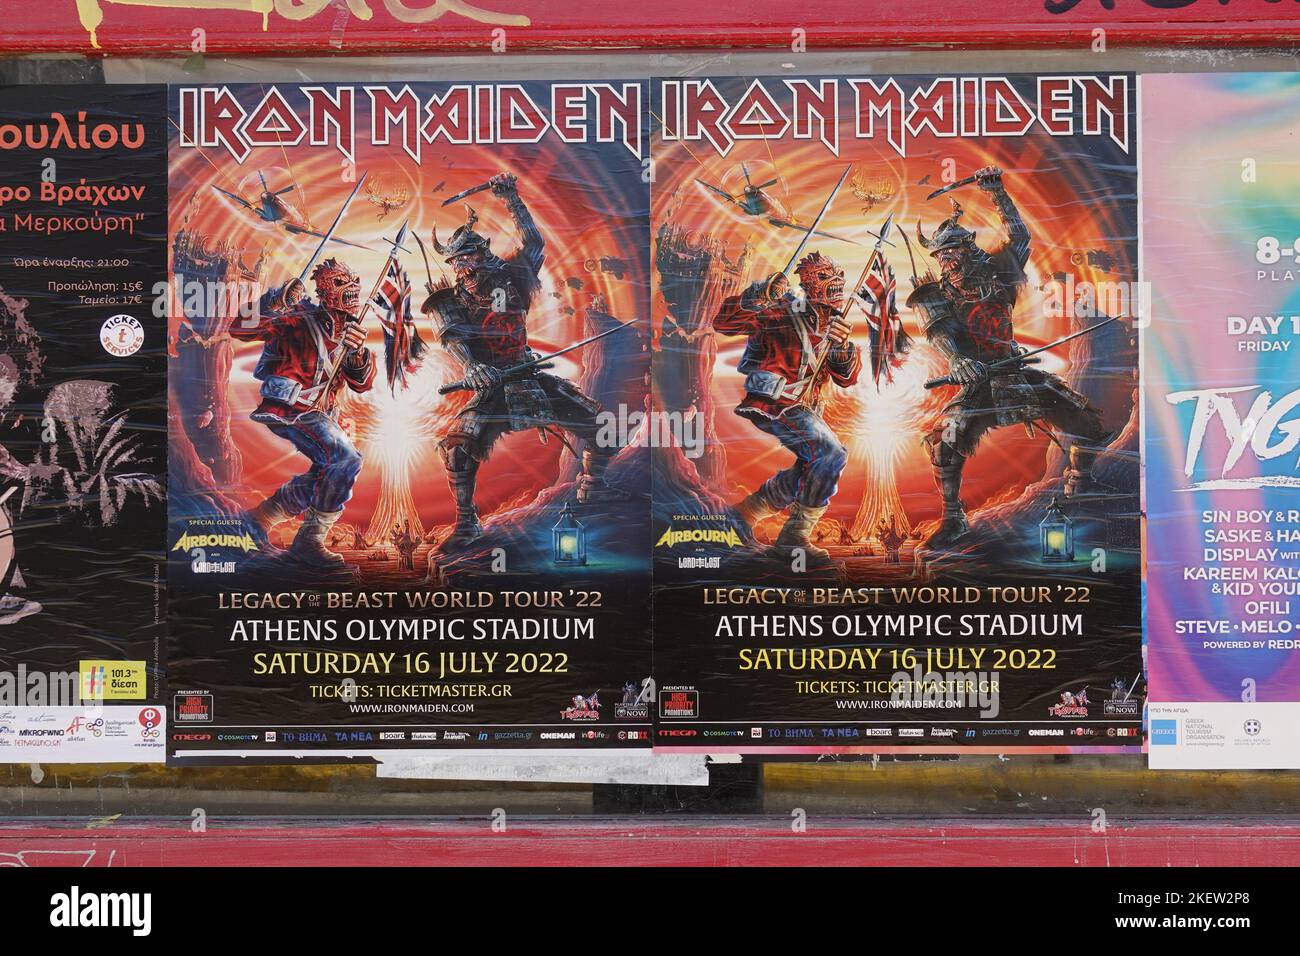 Athen, Griechenland - 11. Juli 2022: Iron Maiden-Konzertplakate für Heavy Metal-Live-Show. Stockfoto